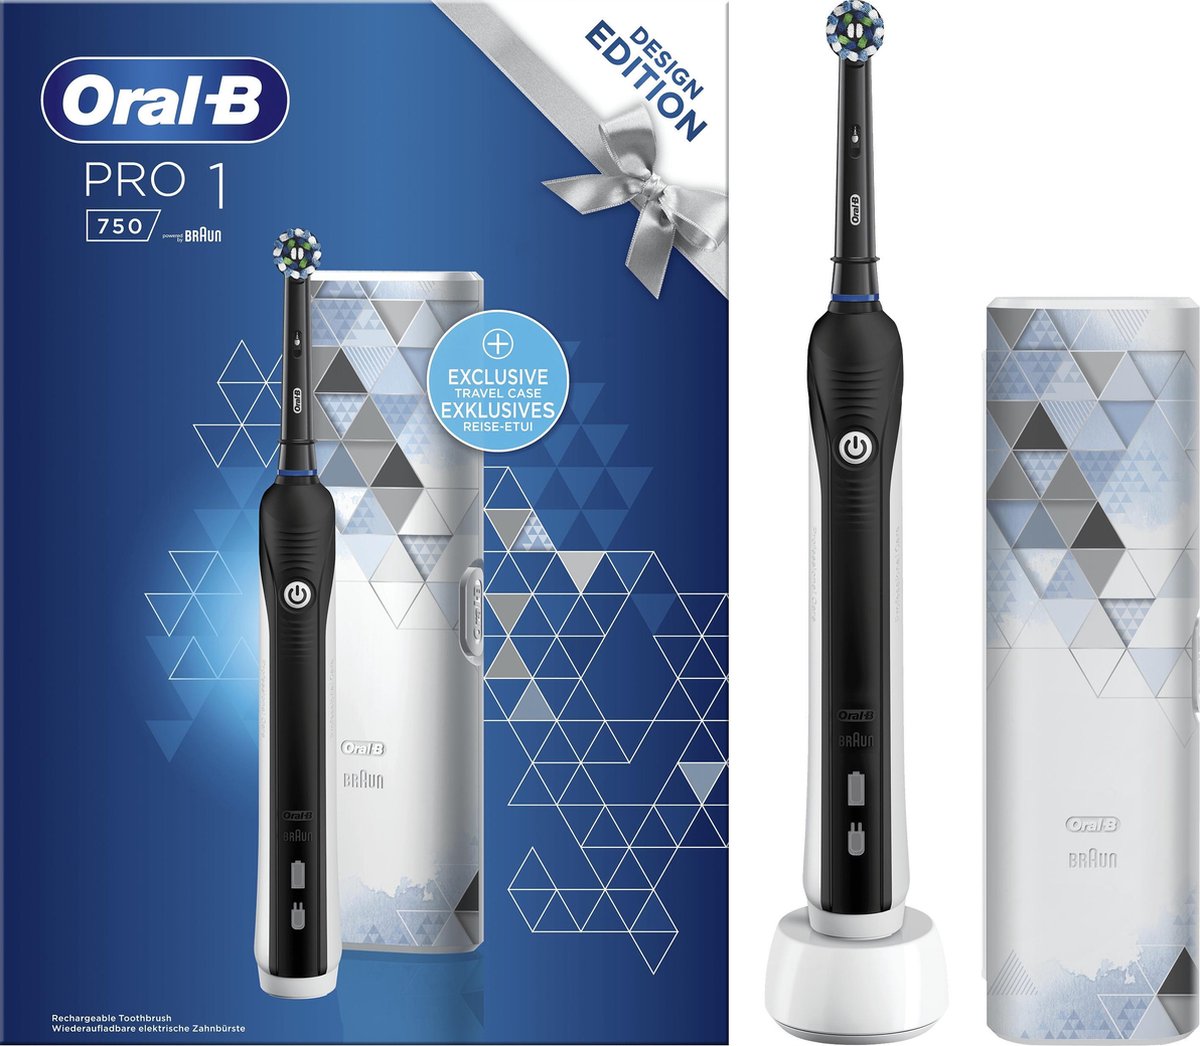 Oral-B PRO 1 - 750 - Elektrische Tandenborstel - Inclusief Reisetui - Braun